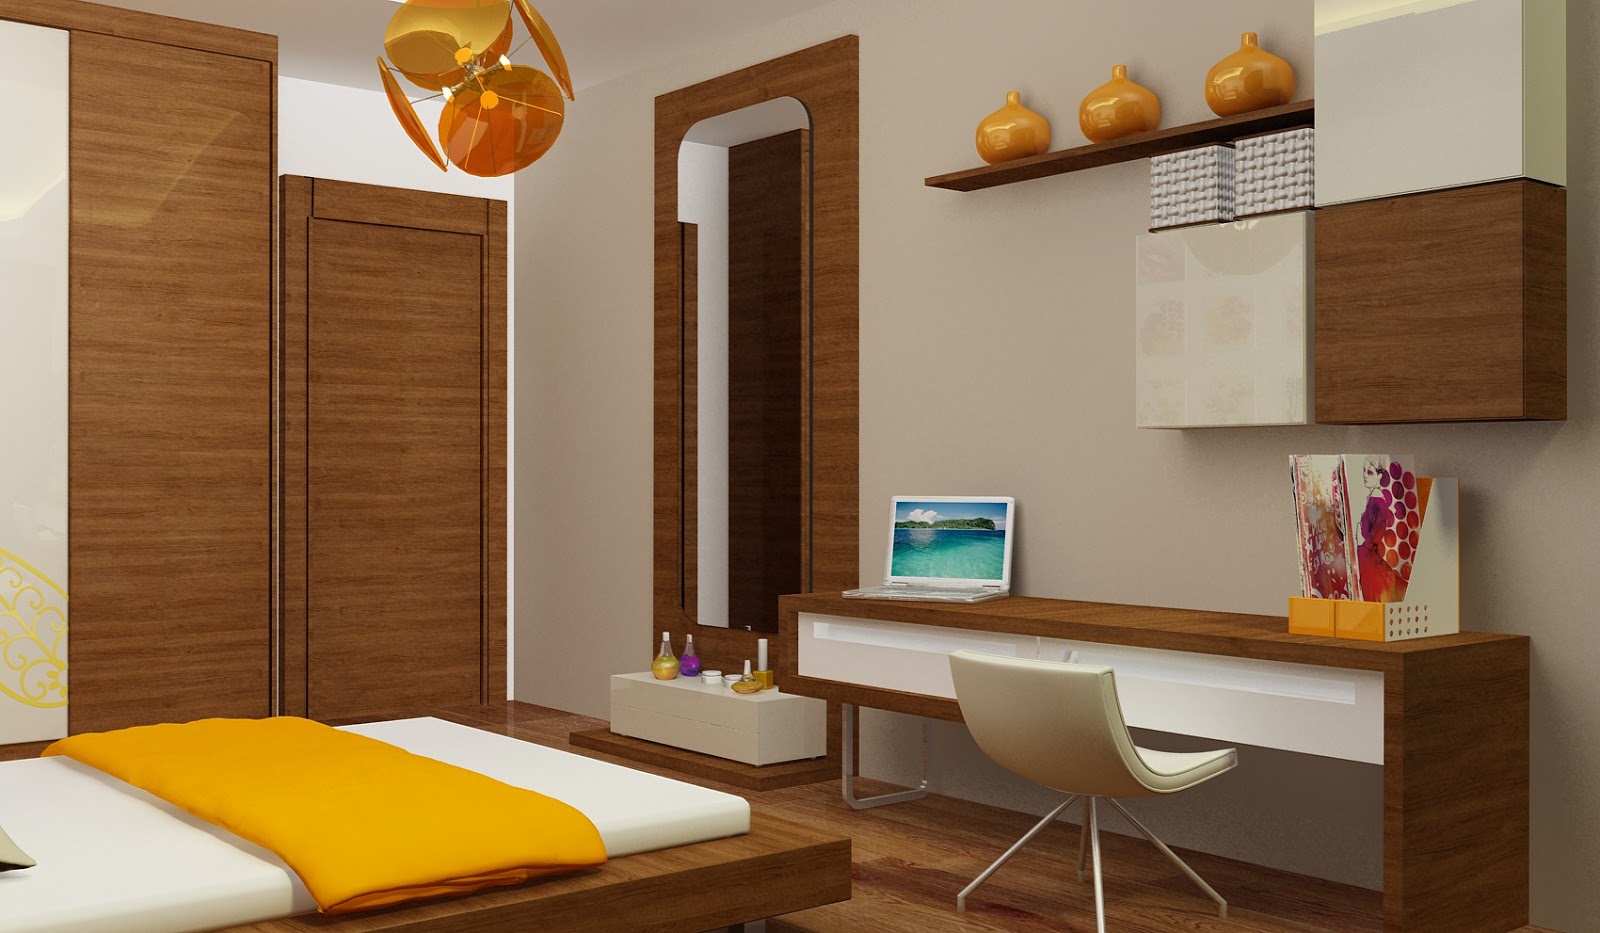 1 Bedroom Apartment Interior Decorating